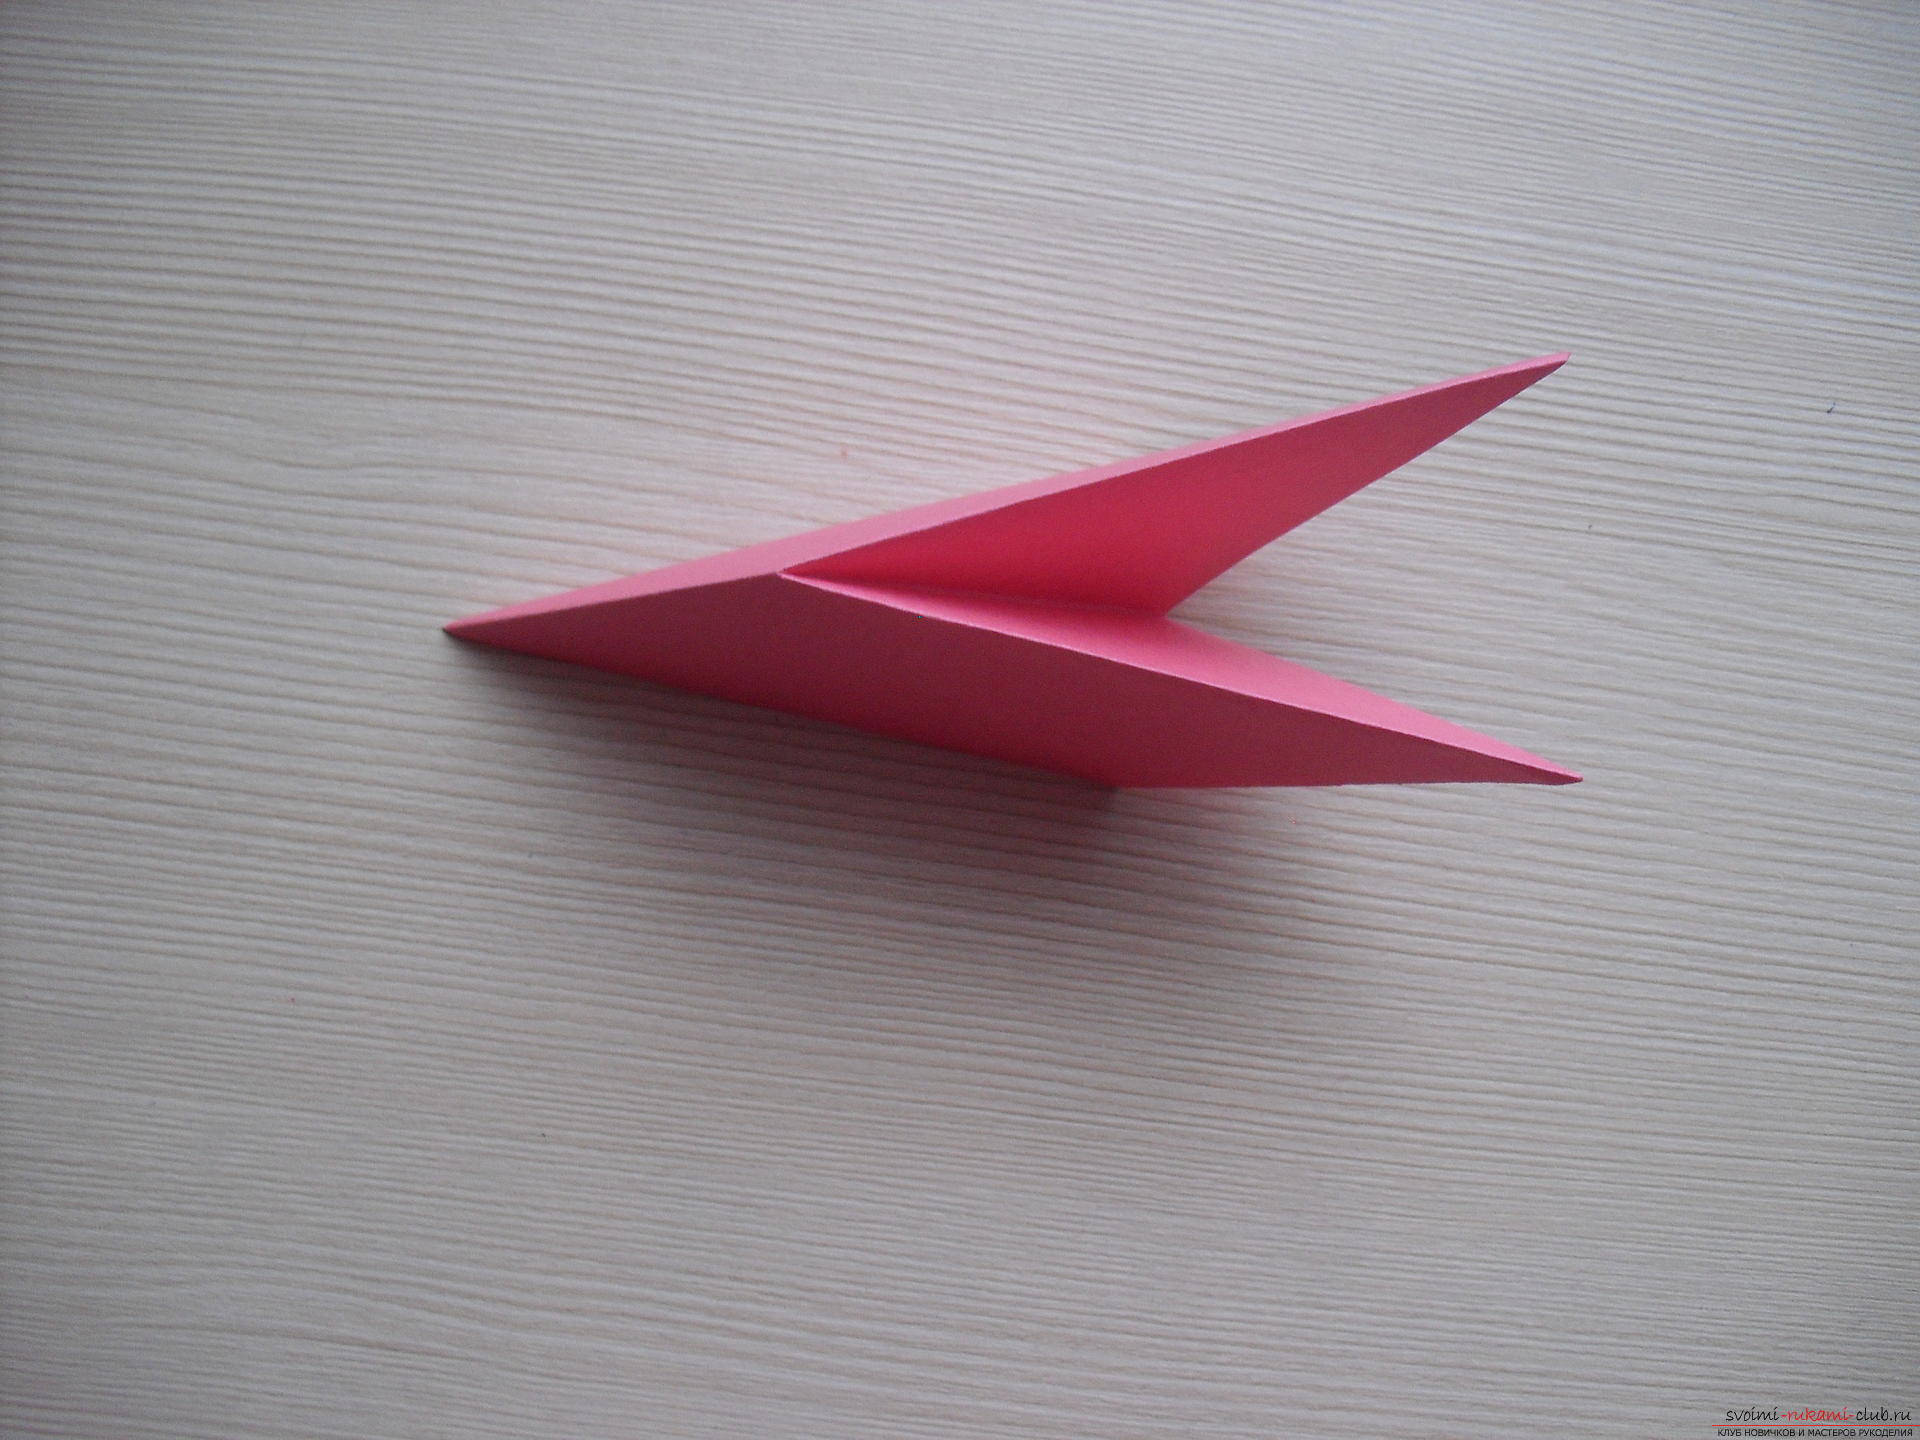 Этот мастер-класс расскажет как создать простое модульное оригами - трансформер.. Фото №9